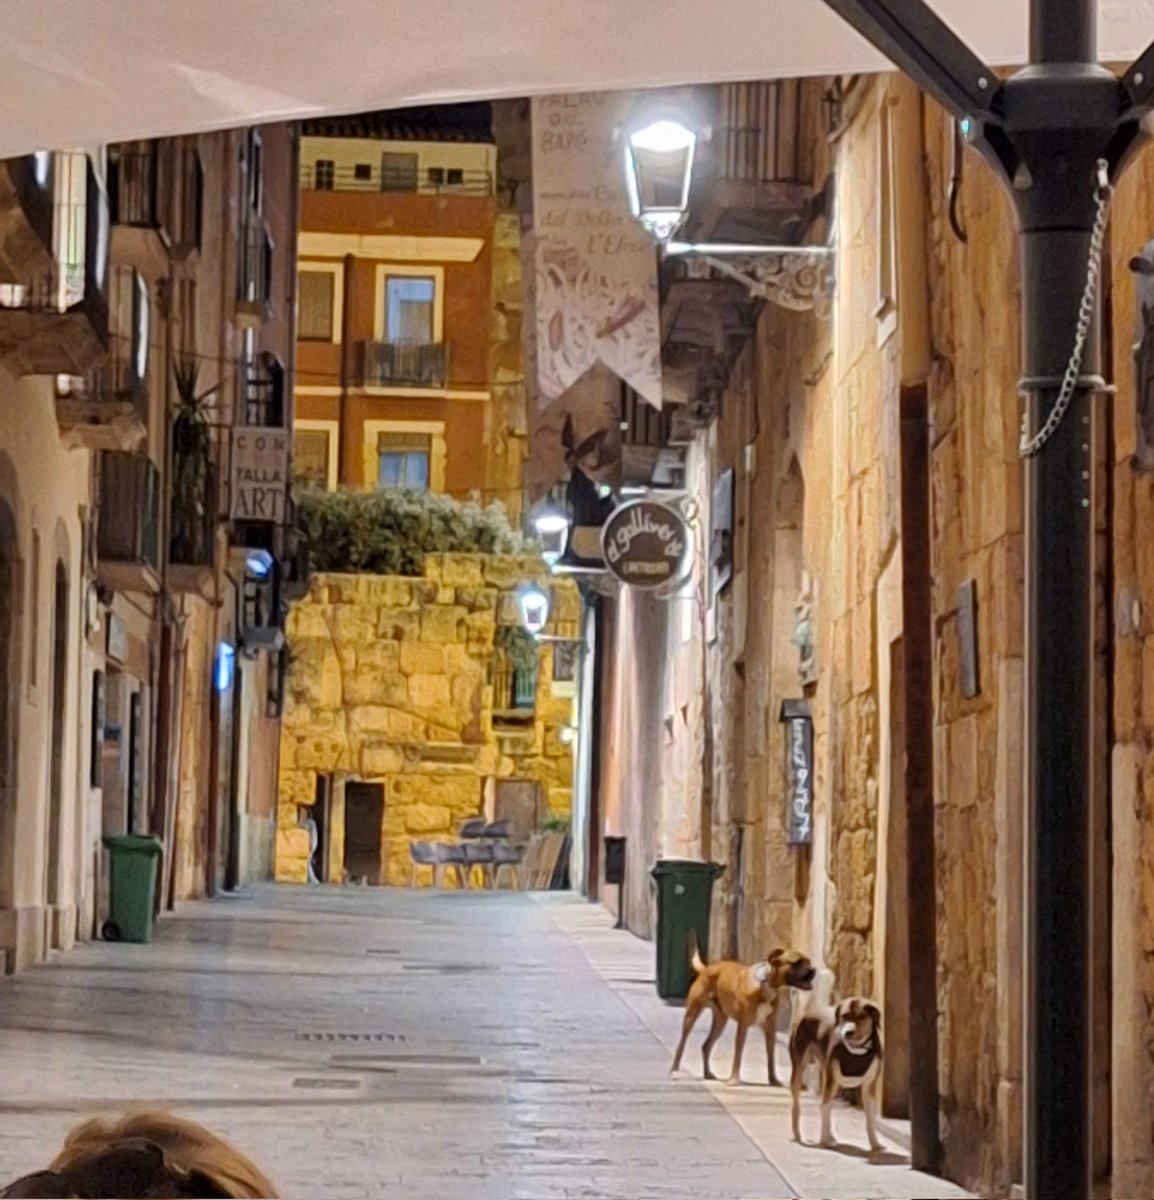 Els okupes que estan al local de sota de l'antiga seu dels Xiquets de #Tarragona amb dos gossos perillosos corrent carrer amunt i carrer avall. Tot correcte.
Compte no mosseguin algun creuerista...